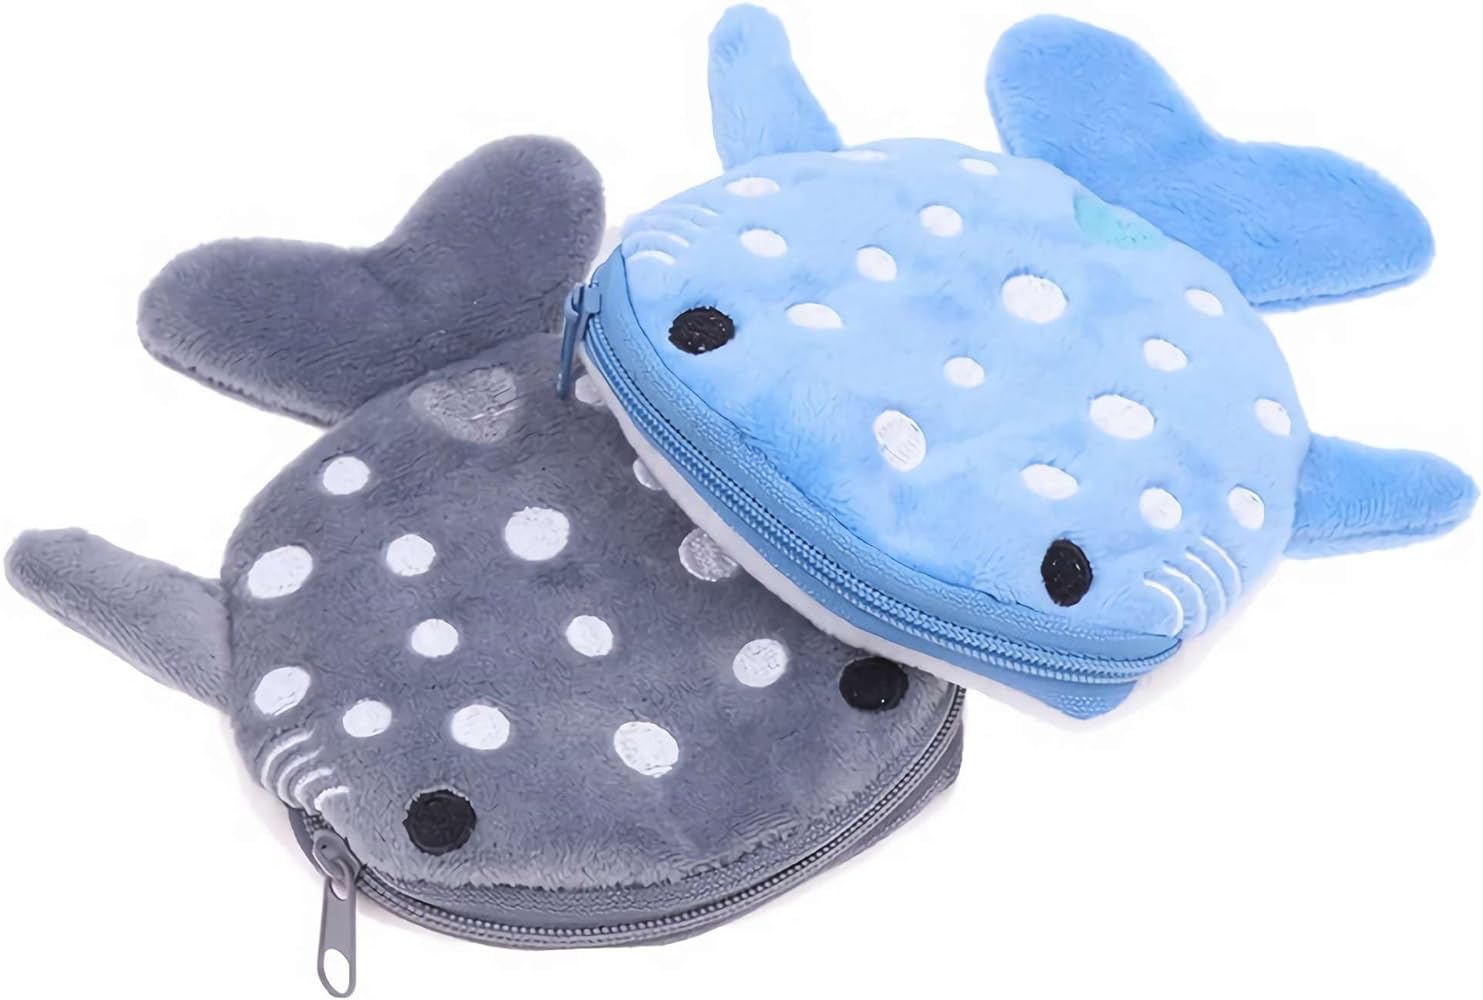 Cute ocean coin purse - whale – Spoonful of Pretty